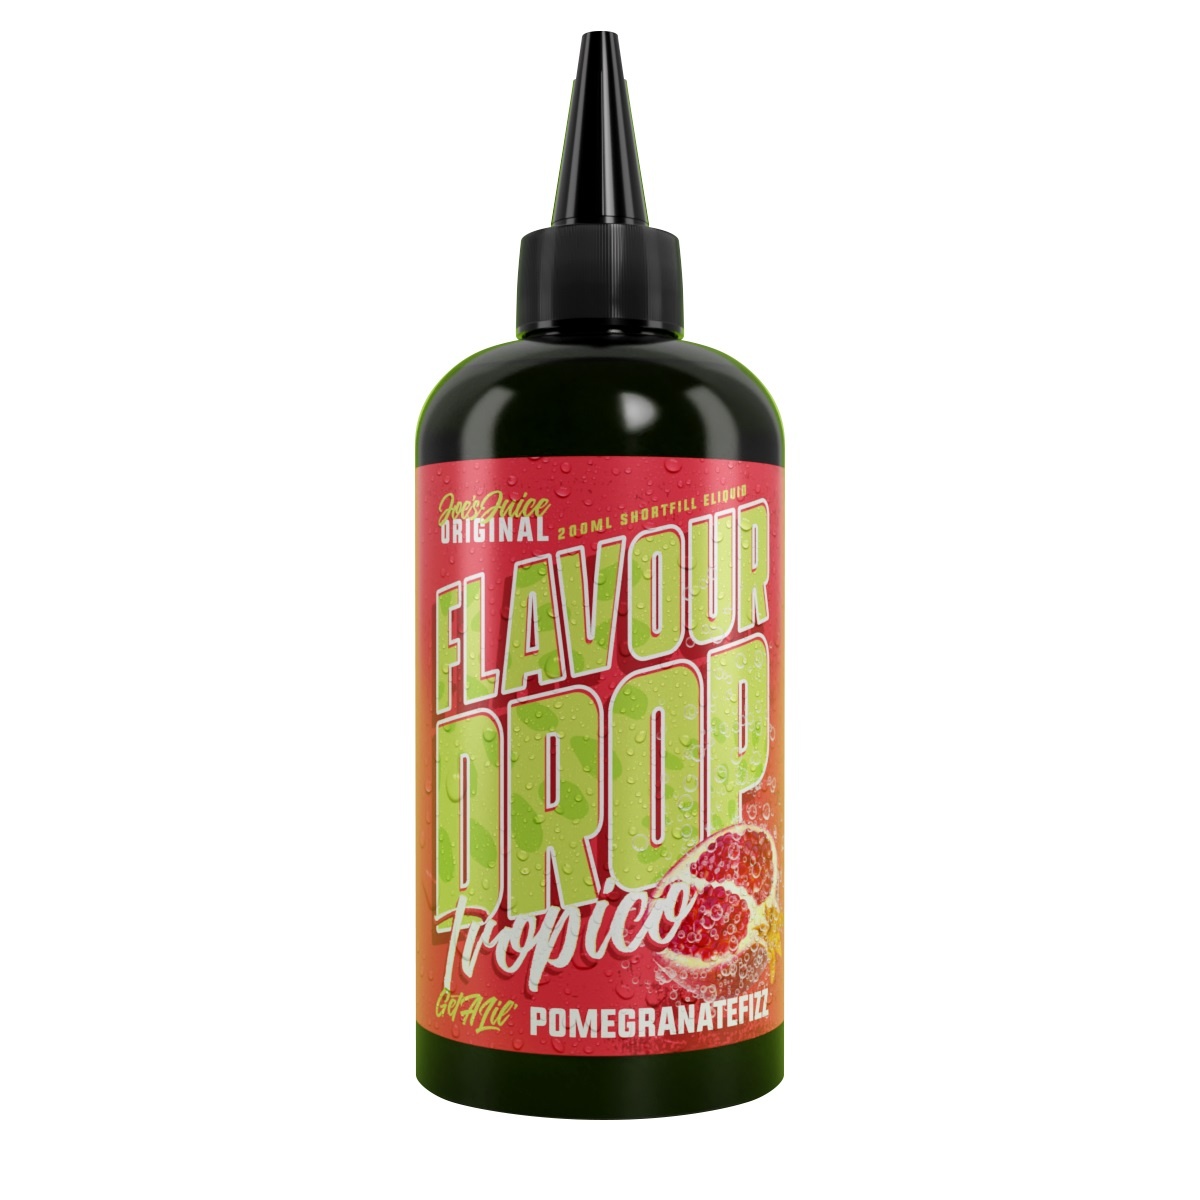 flavour-drop-tropico-200ml-pomegrante-fizz